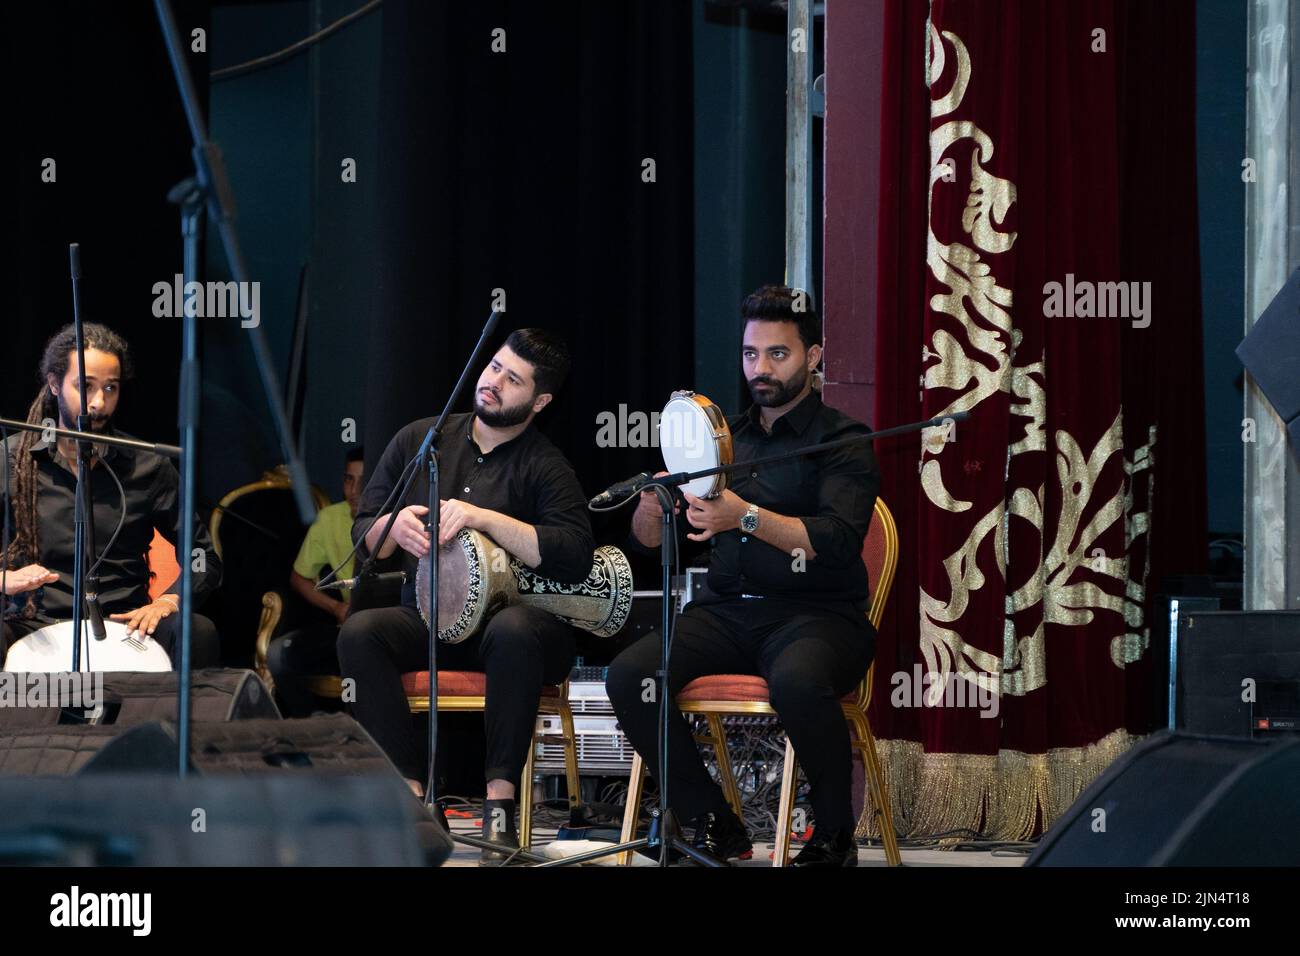 Une vue des musiciens jouant sur scène pendant un événement médical à l'opéra d'Alexandrie Banque D'Images